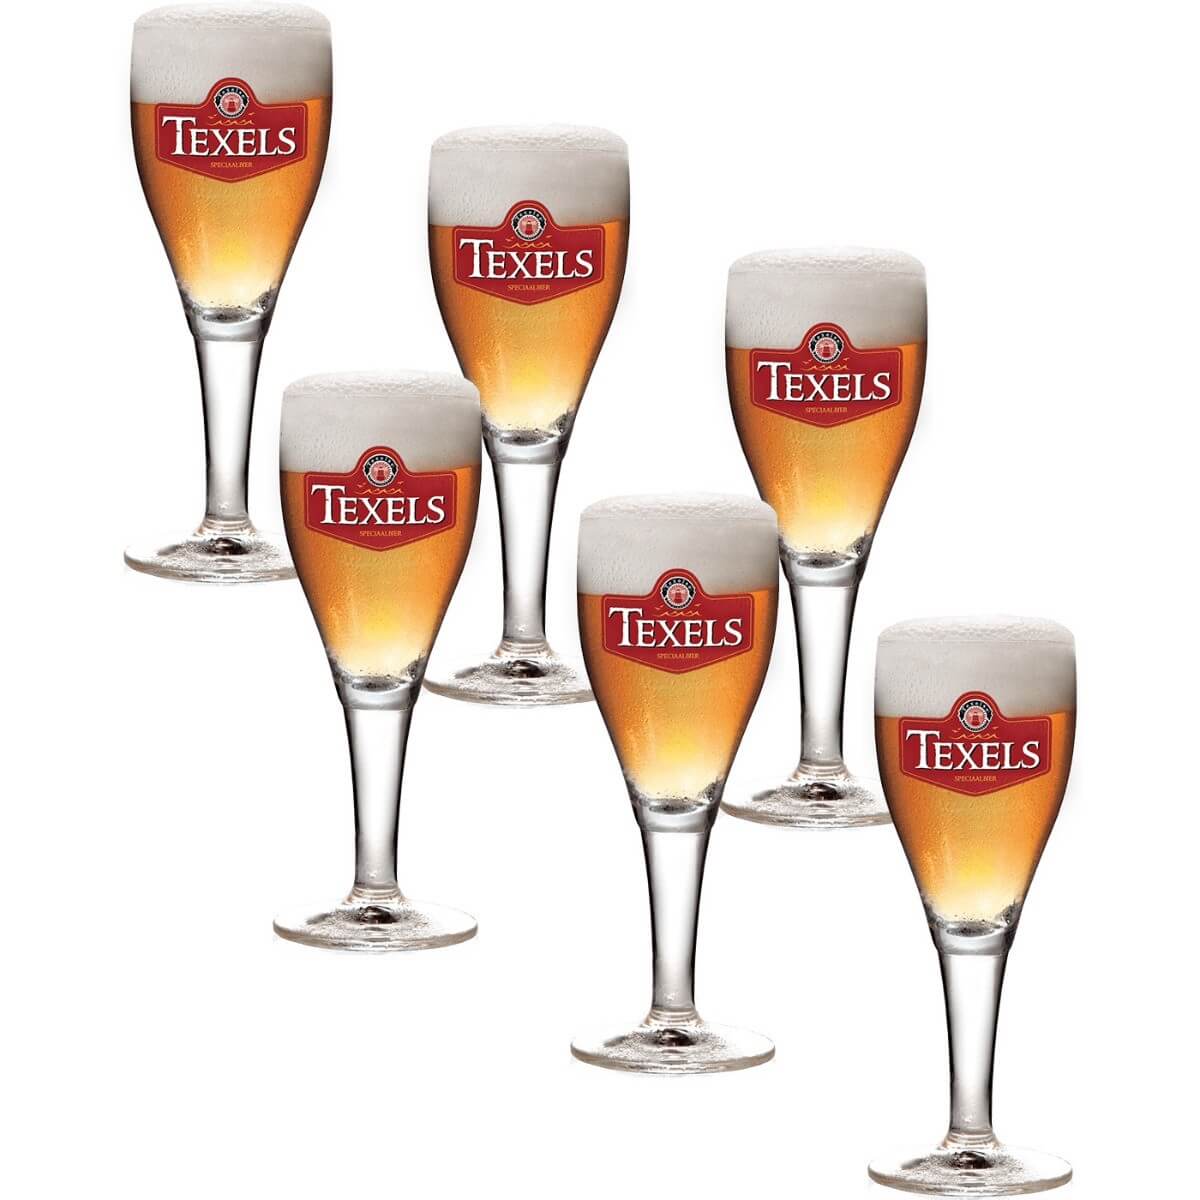 Texels bierglas op voet - 30cl - 6 bierglazen